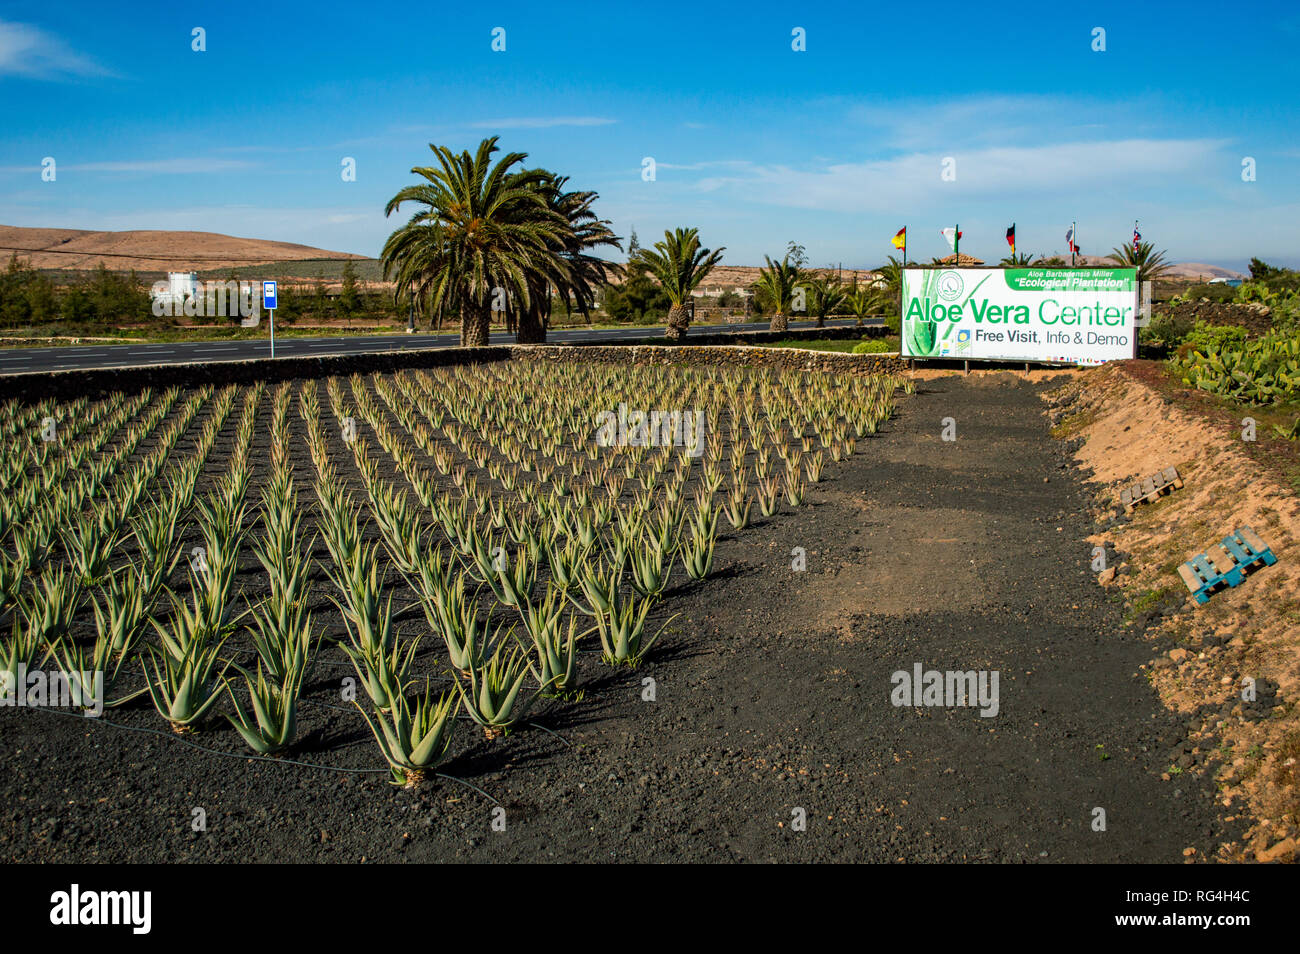 La Finca Canarias Aloe Vera Garden Centre en Fuerteventura, Islas Canarias  Fotografía de stock - Alamy